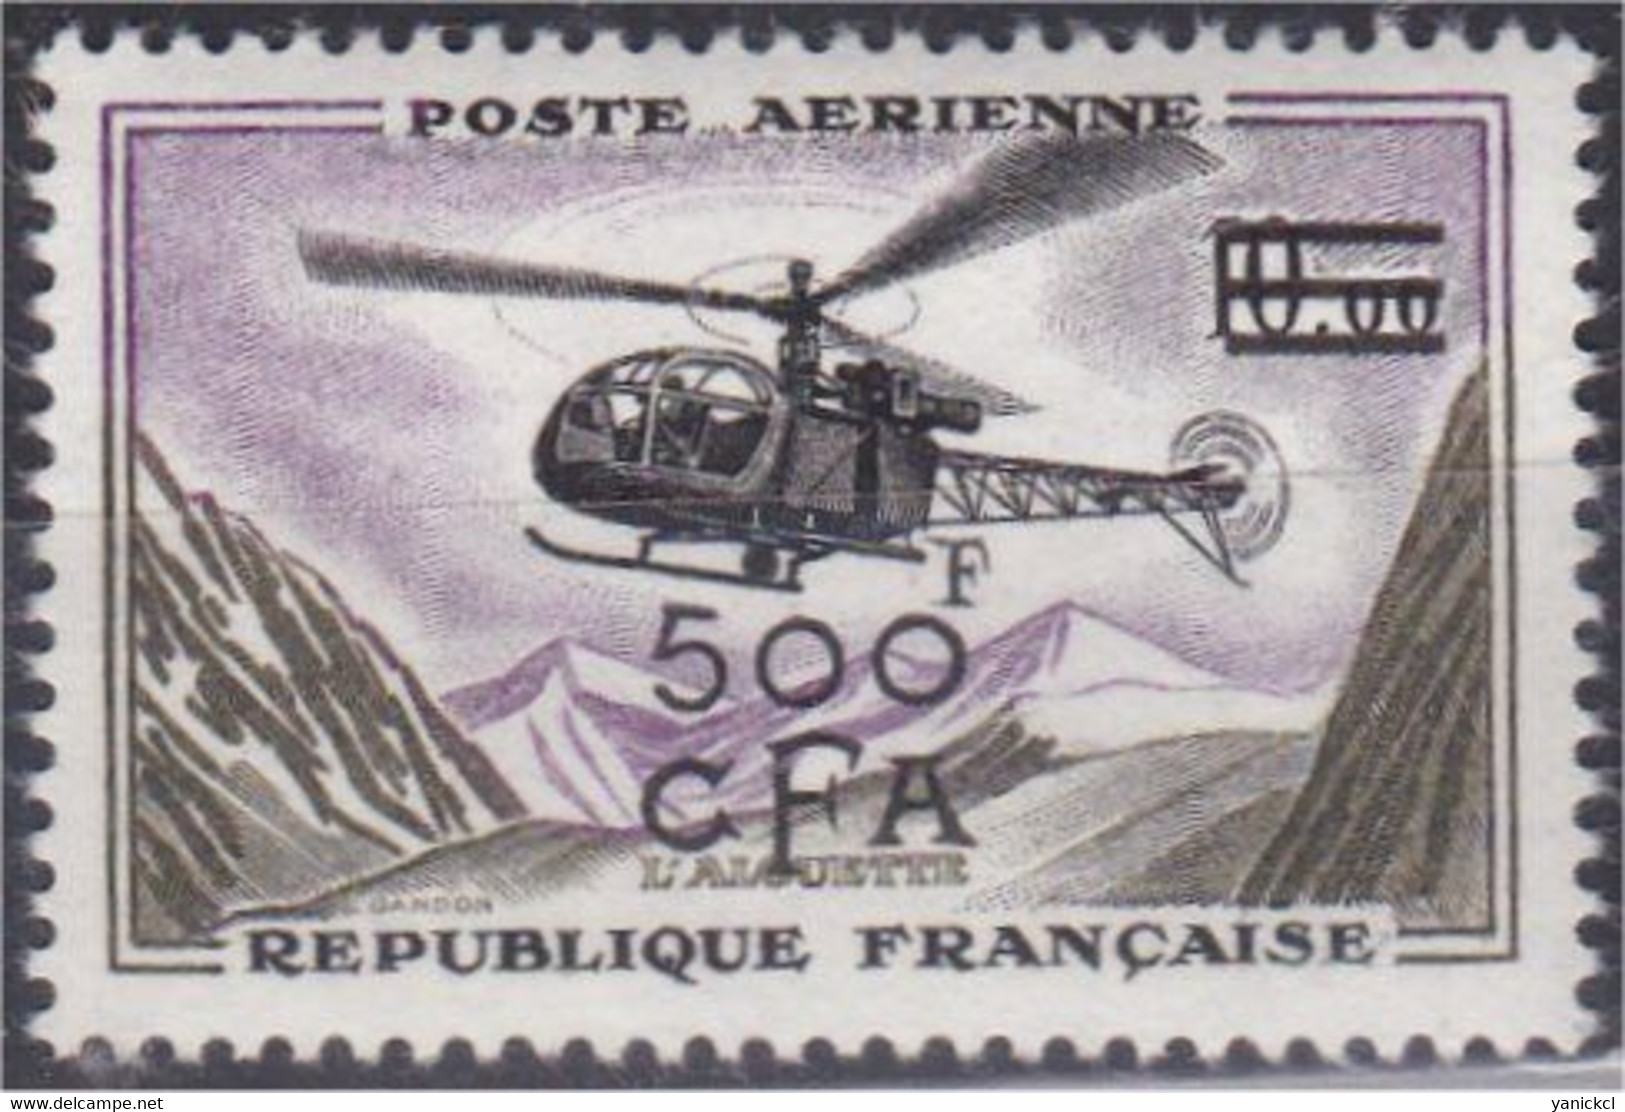 Timbre De La Réunion Surchargé (CFA) -Année 1961 - Alouette  500 F. S. 10f. - Y&T N° 60 ** - Airmail